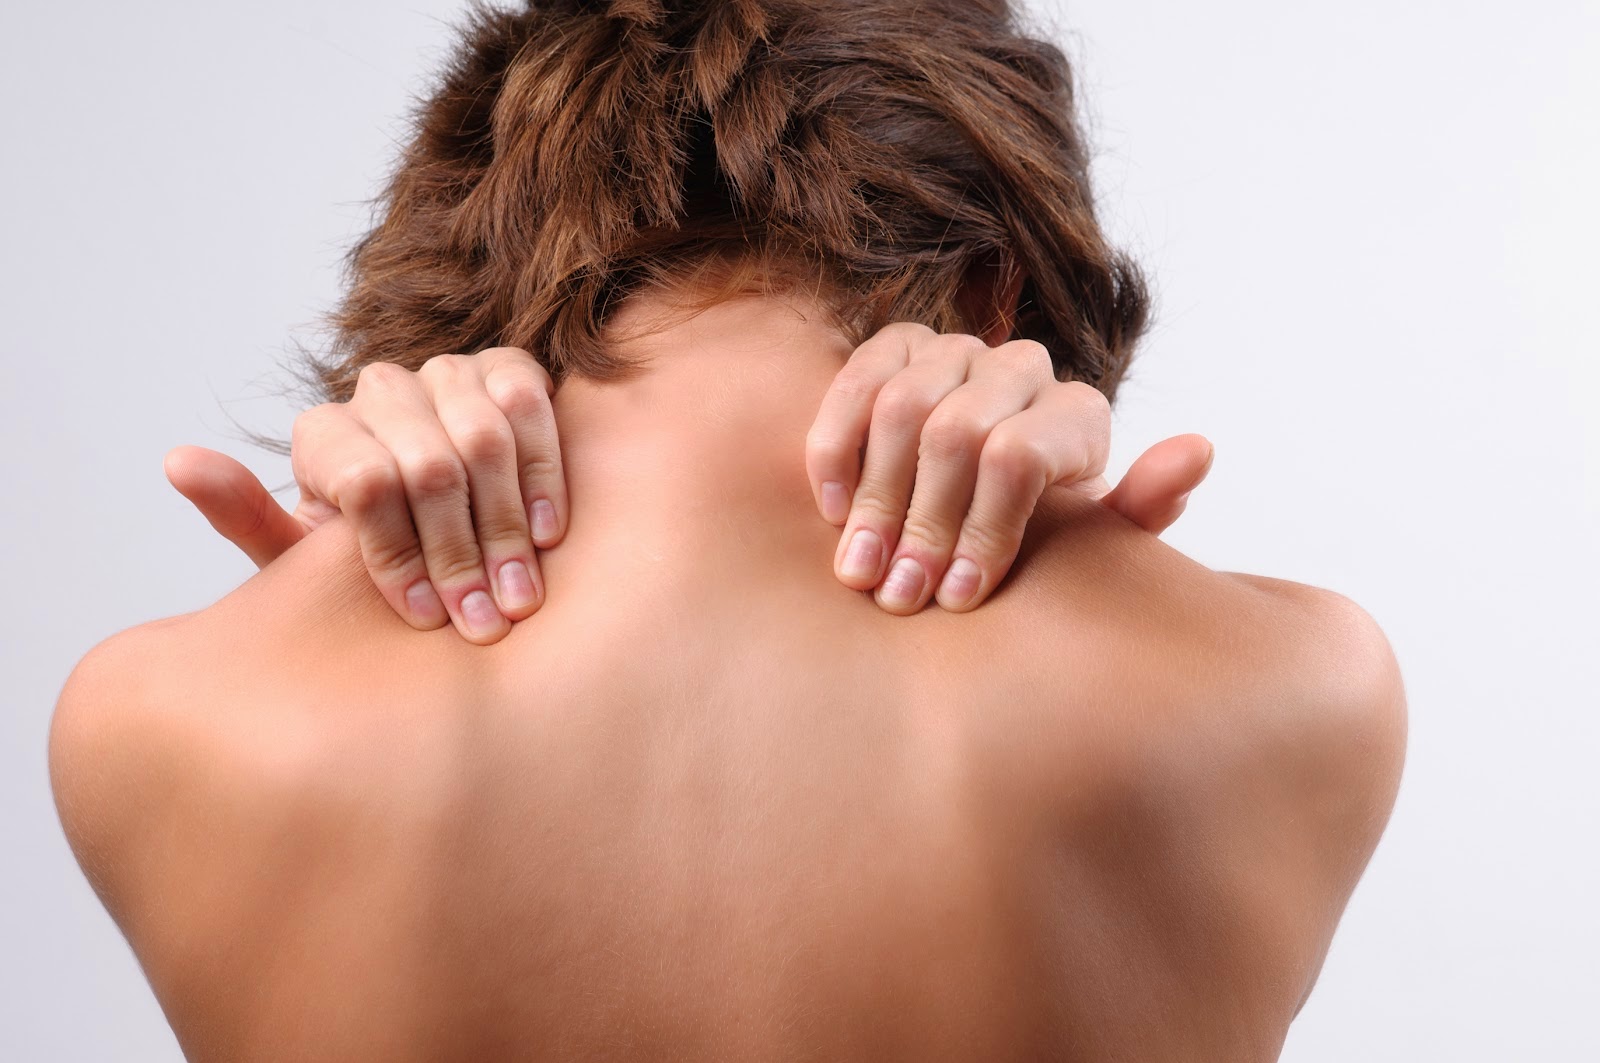 Πόνος στην πλάτη: Δείτε που μπορεί να οφείλεται